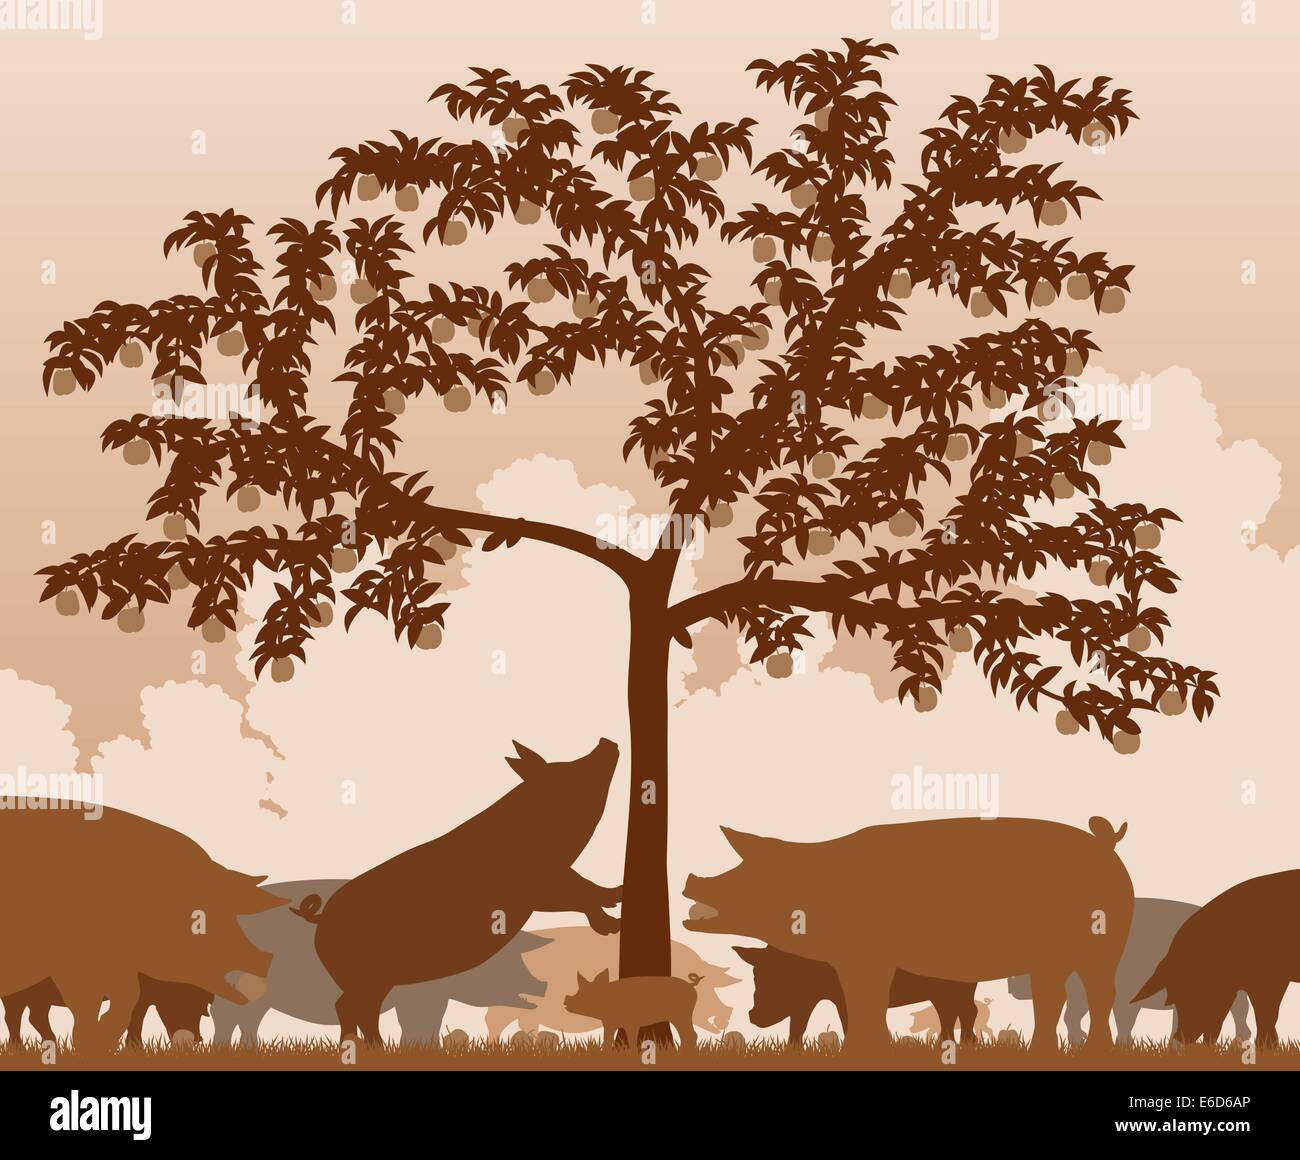 Bearbeitbares Vektor-Illustration von freilaufenden Schweinen Fütterung unter einem Apfelbaum mit allen Zahlen als separate Objekte Stock Vektor